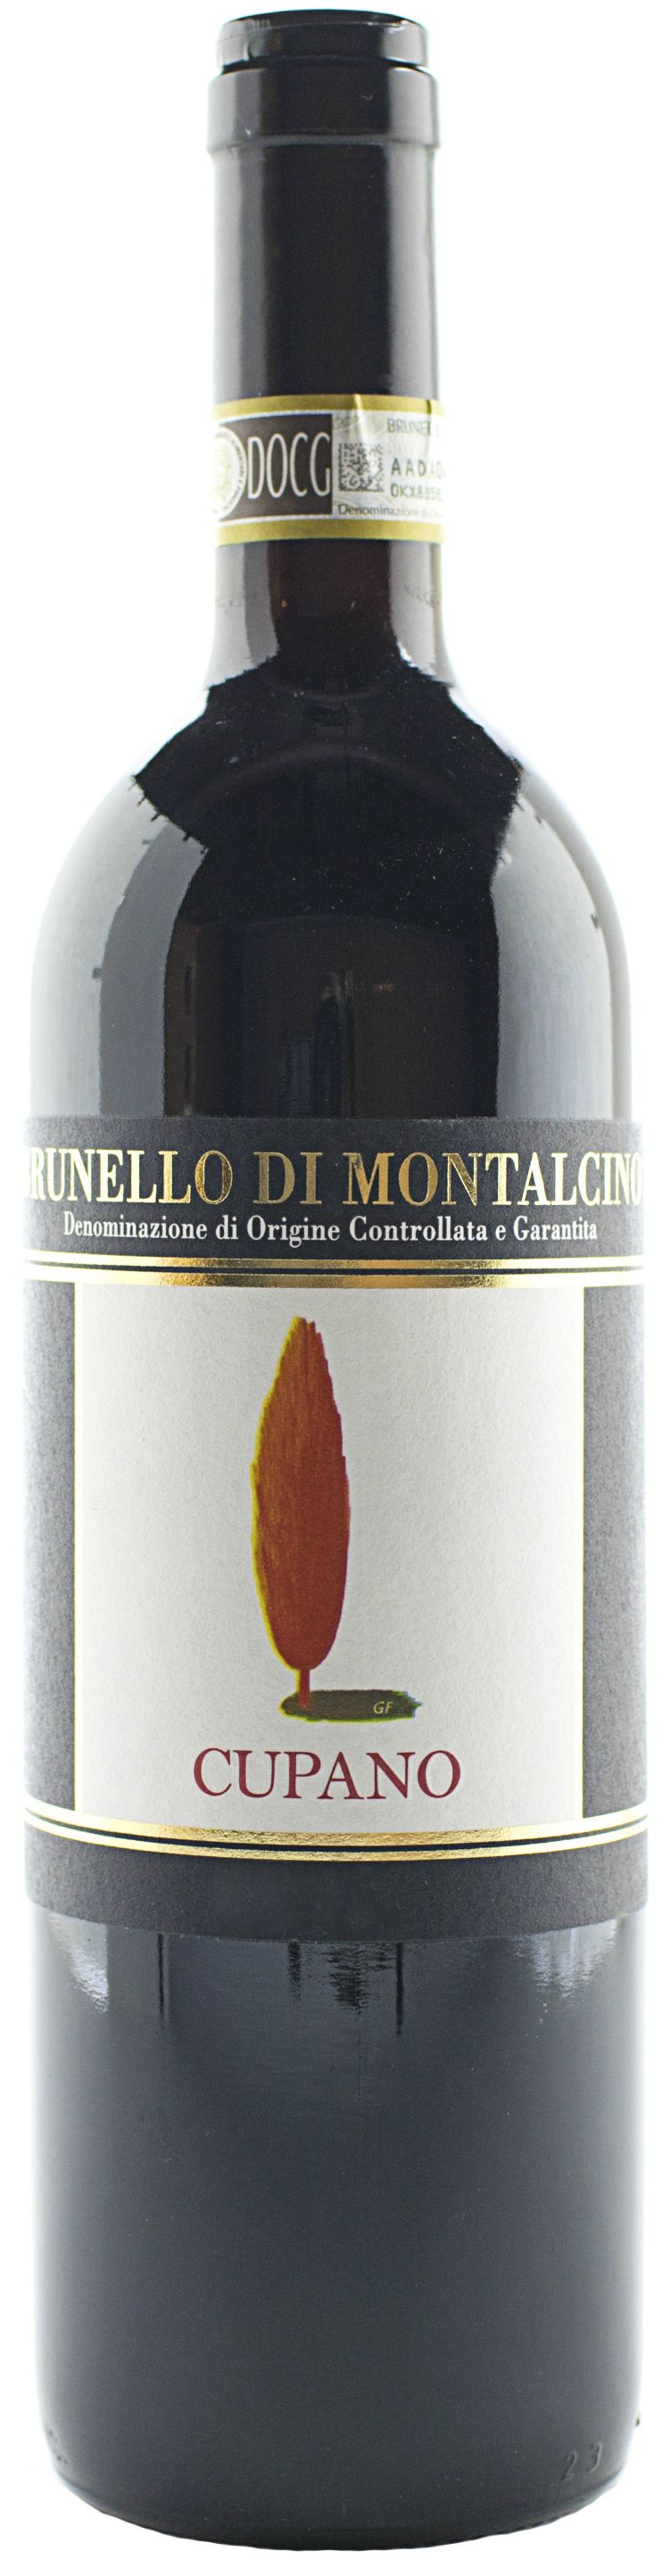 Cupano, Brunello Di Montalcino, 2001